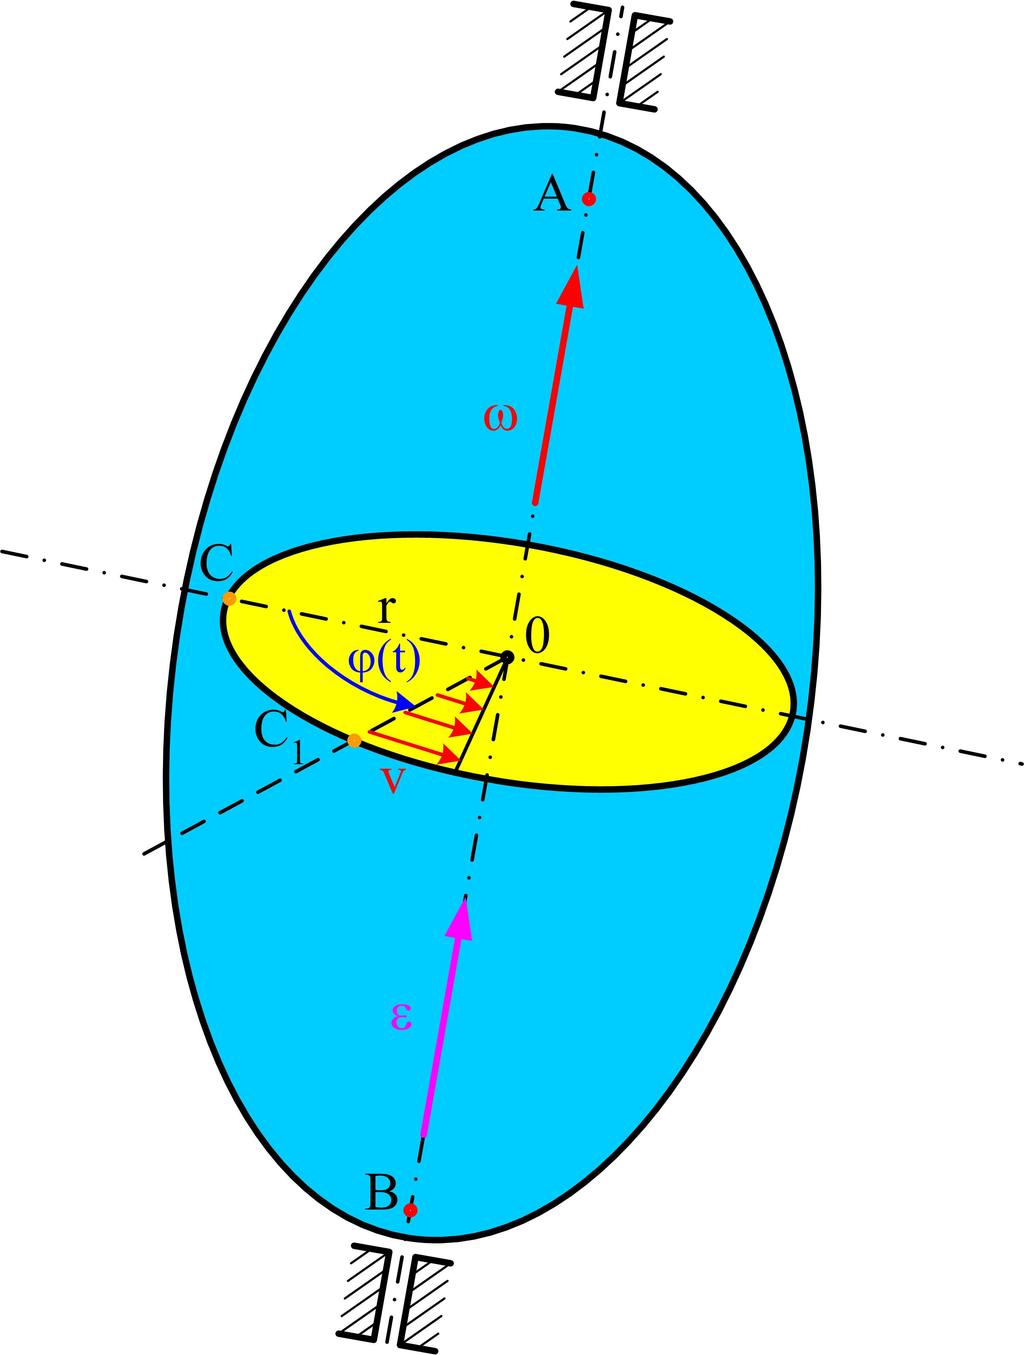 Ruch obrotowy bryły dookoła osi stałej Bryła może obracać się jedynie dookoła osi (przechodzącej przez dwa punkty), zwanej osią obrotu.